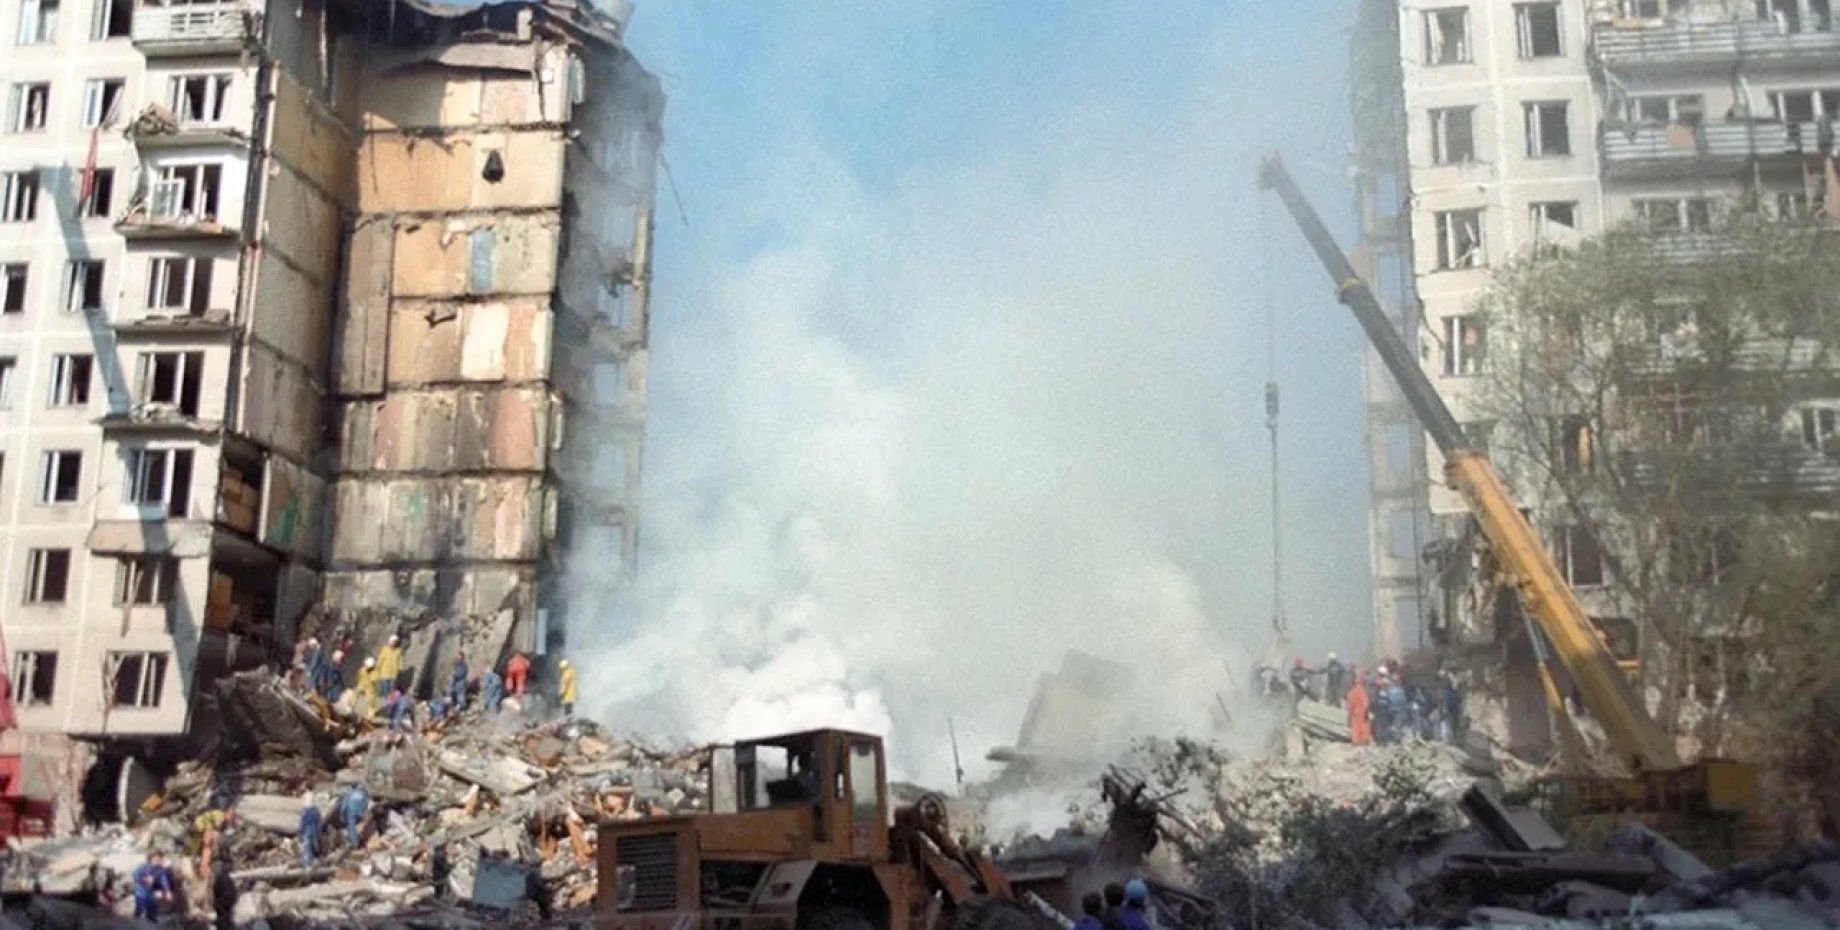 Теракт в москве что известно сейчас. Взрывы на каширке и Гурьянова 1999. Взрыв в Москве на улице Гурьянова в 1999 году. Теракт на улице Гурьянова 1999. Взрыв дома на улице Гурьянова 1999.